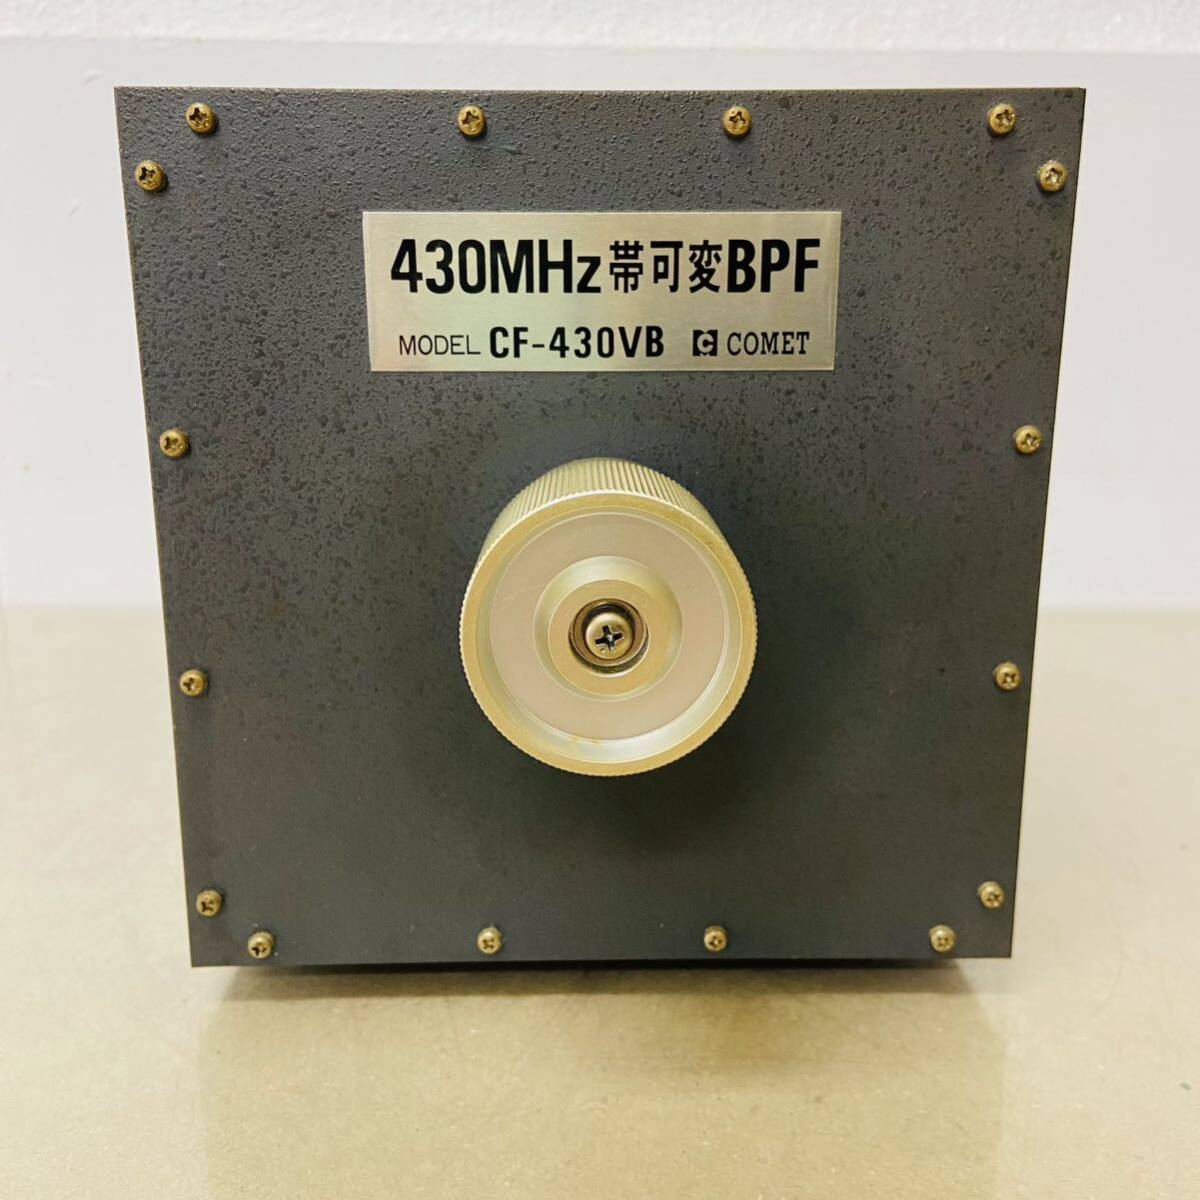 現状品 コメット 可変型バンドパス フィルター CF-430VB  無線機  430MHz 帯可変BPF  アクセサリー i17166 100サイズ発送  の画像2